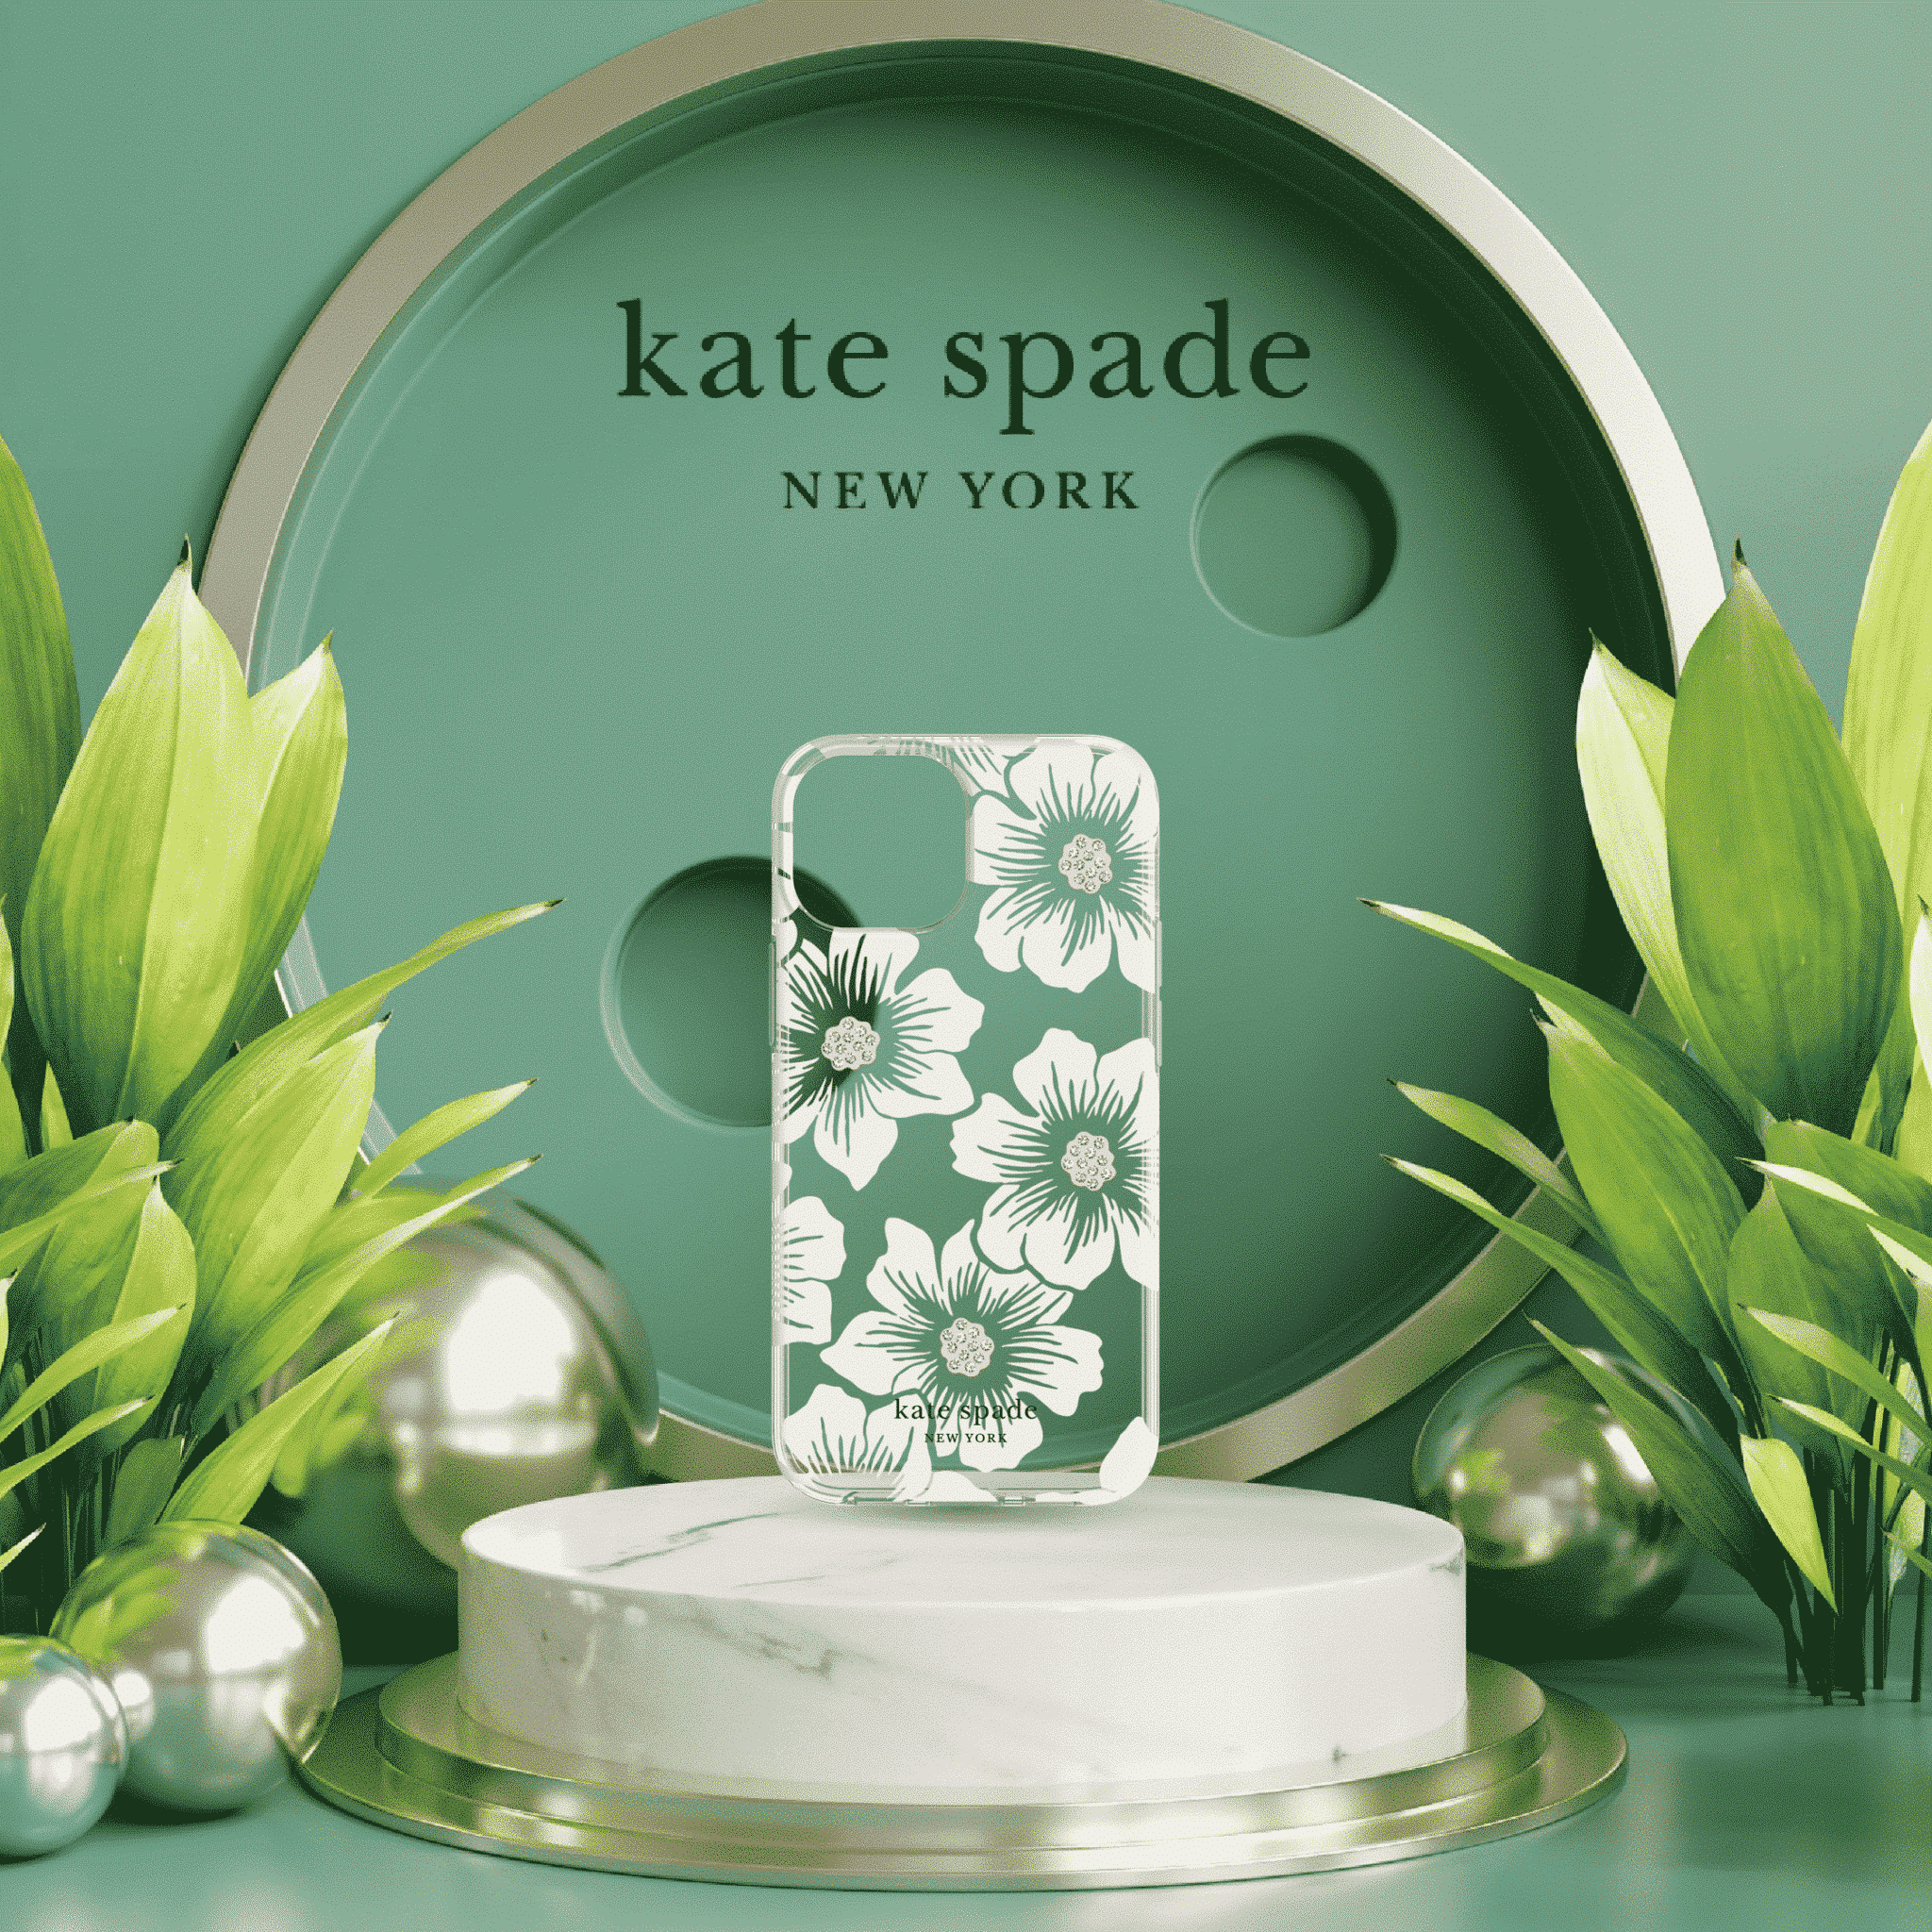 เคส Kate Spade New York รุ่น Protective Hardshell Case - iPhone 13 Pro Max - Hollyhock Floral Clear